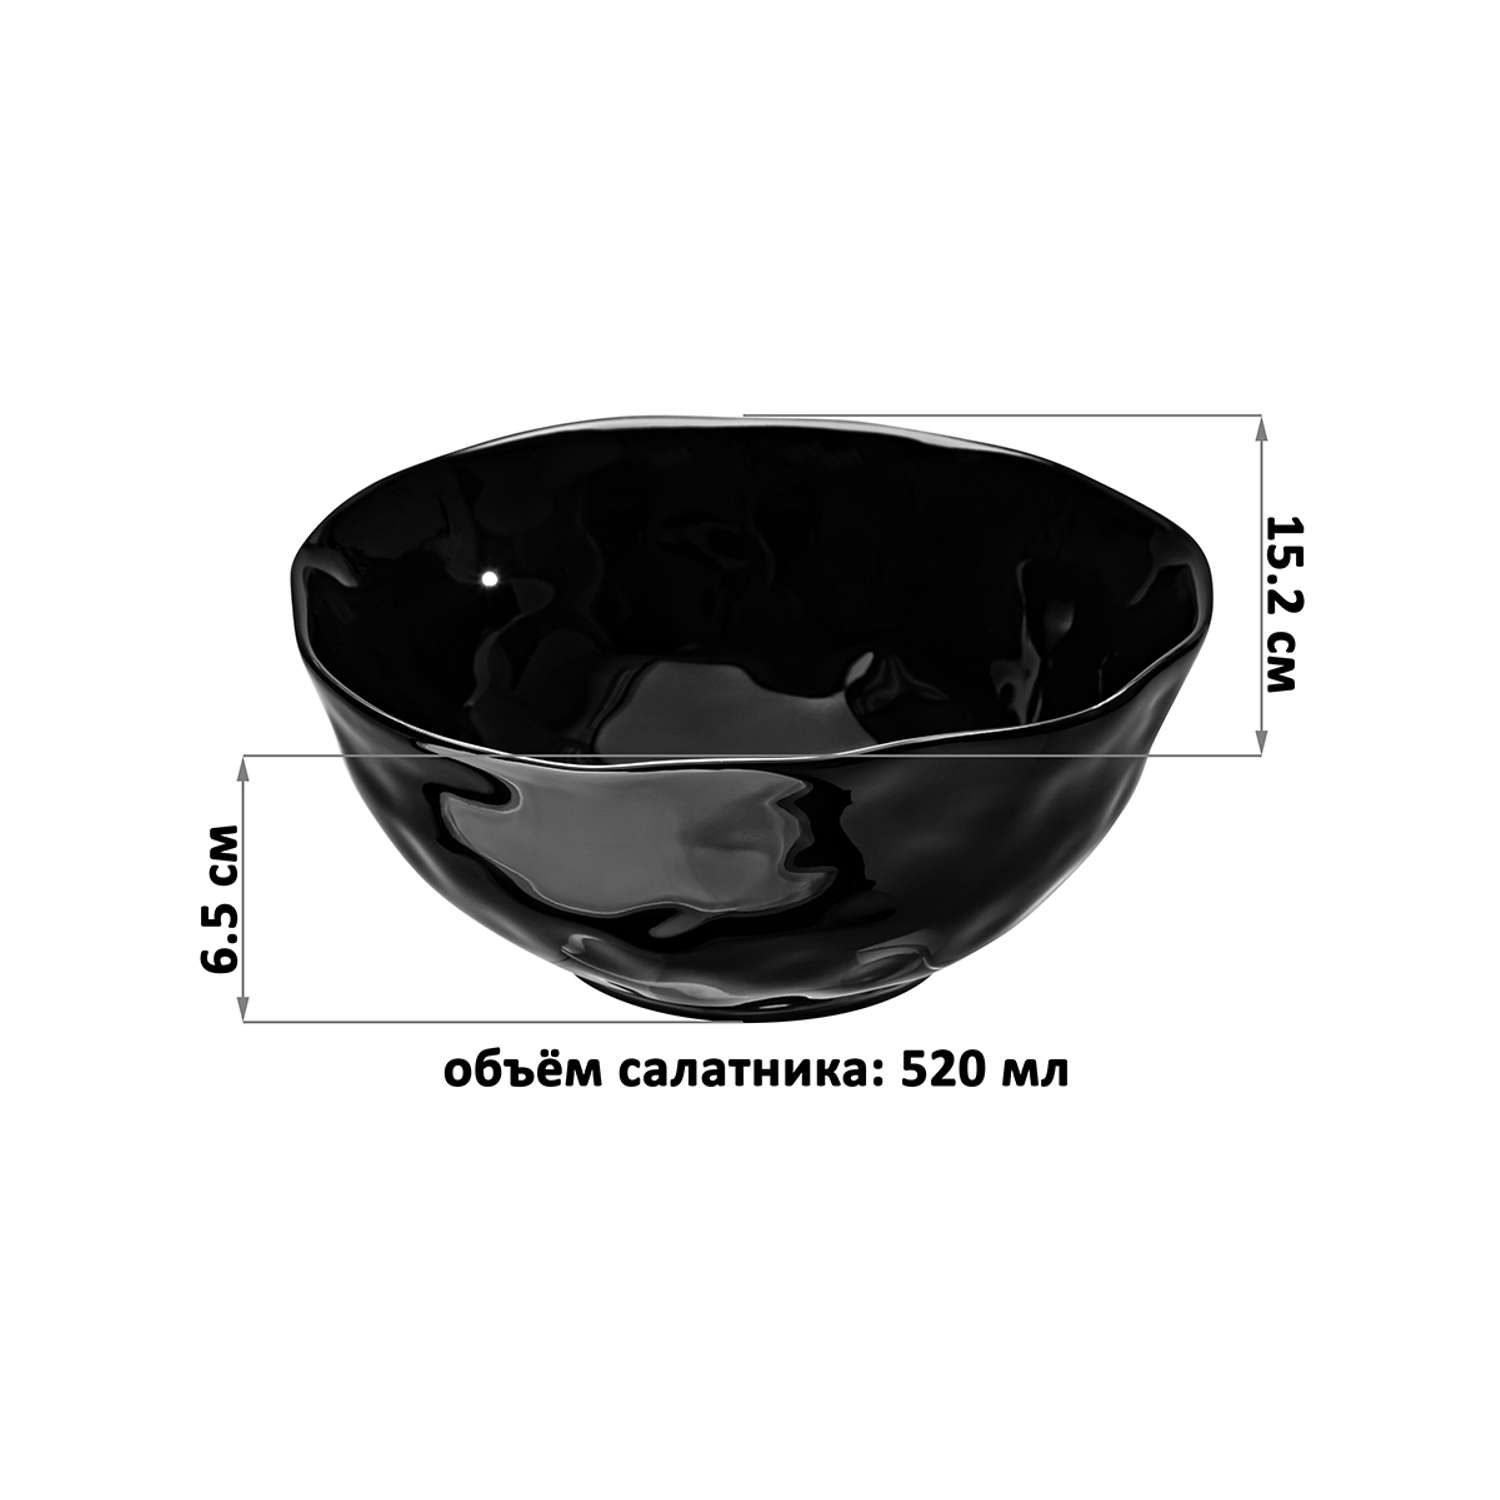 Набор салатников Elan Gallery 2 шт 520 мл 15.2х15.2х6.5 см Консонанс белый и черный глянец - фото 3